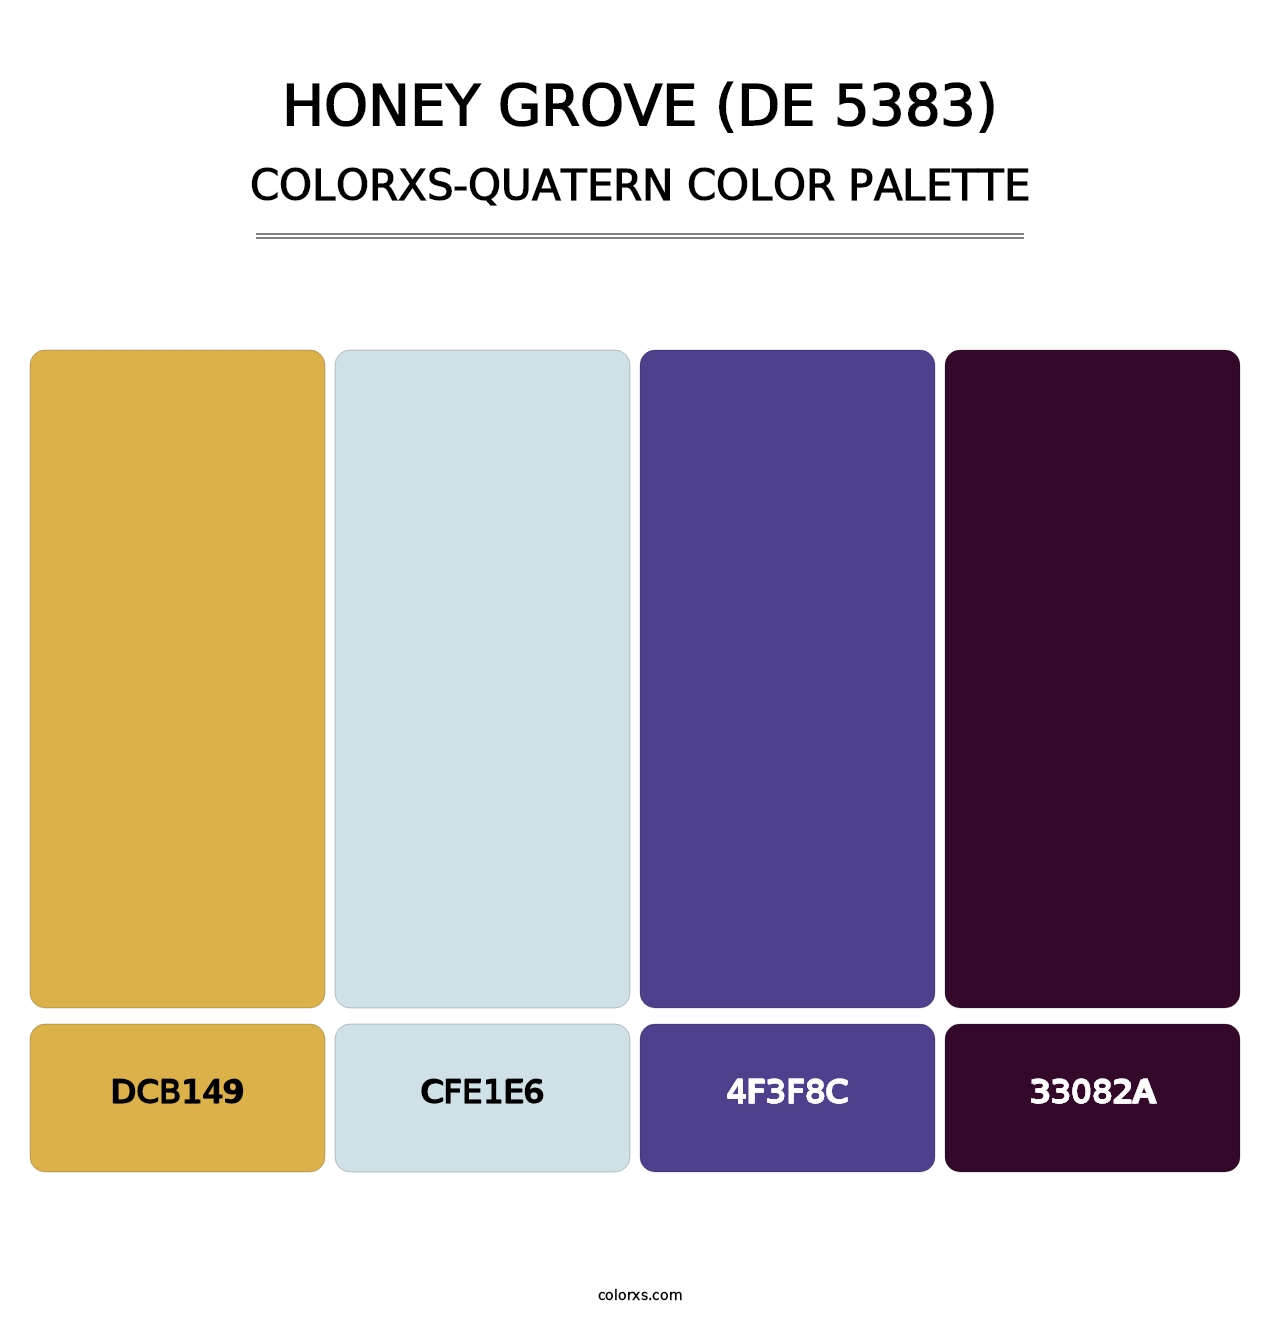 Honey Grove (DE 5383) - Colorxs Quatern Palette